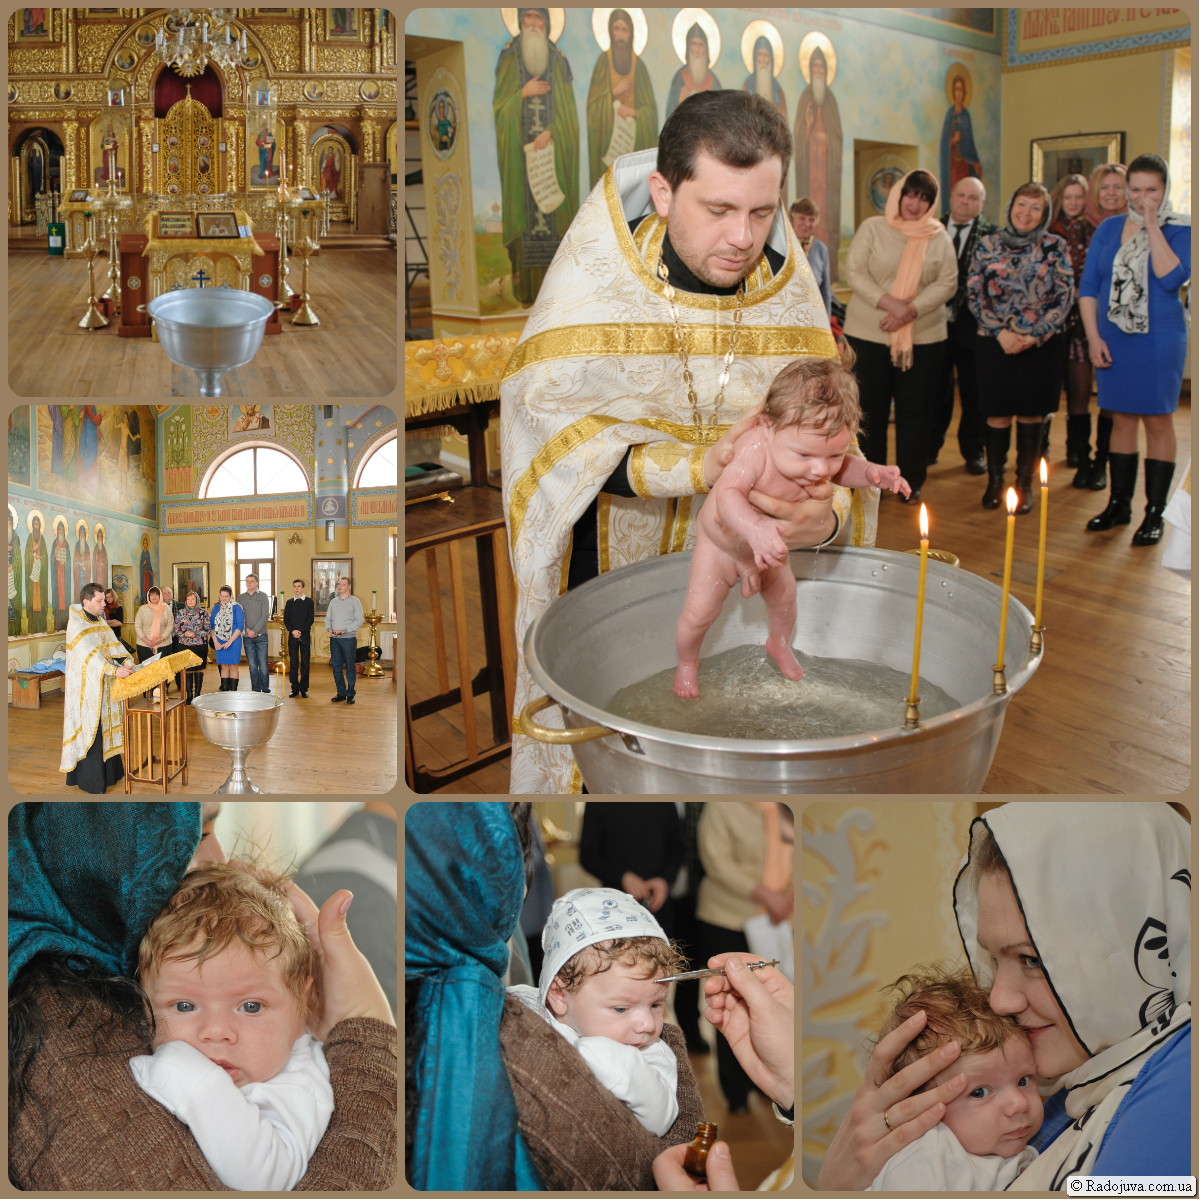 Fotos del bautizo de un niño.